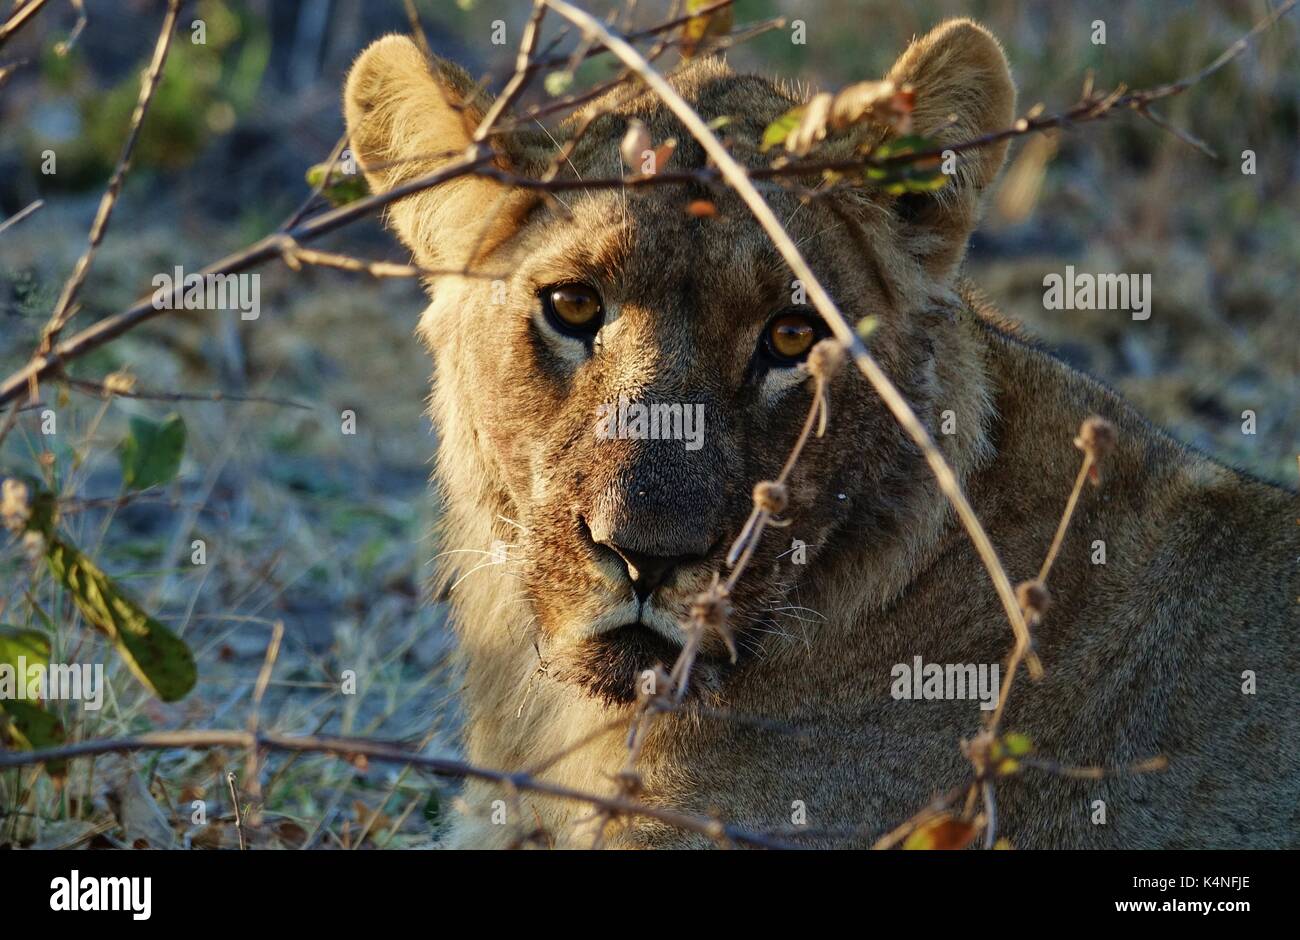 Viendo la cara de león Foto de stock